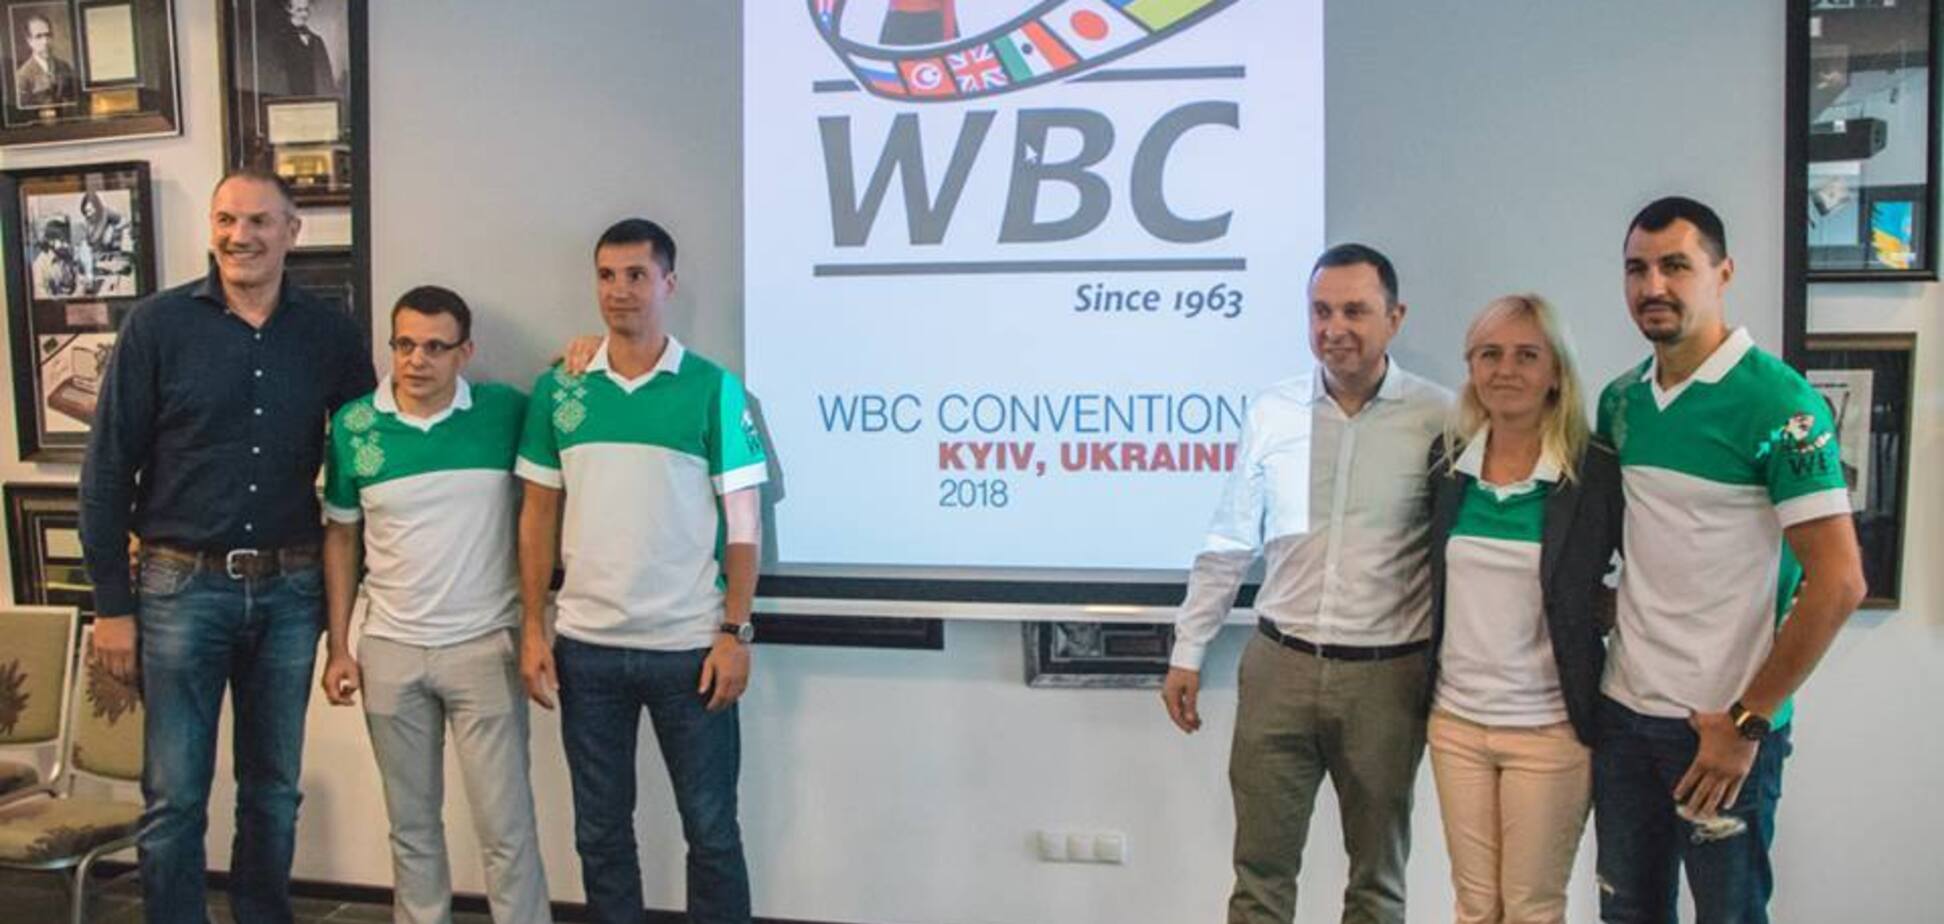 Желто-синий: WBC ради Украины изменил эмблему - фотофакт